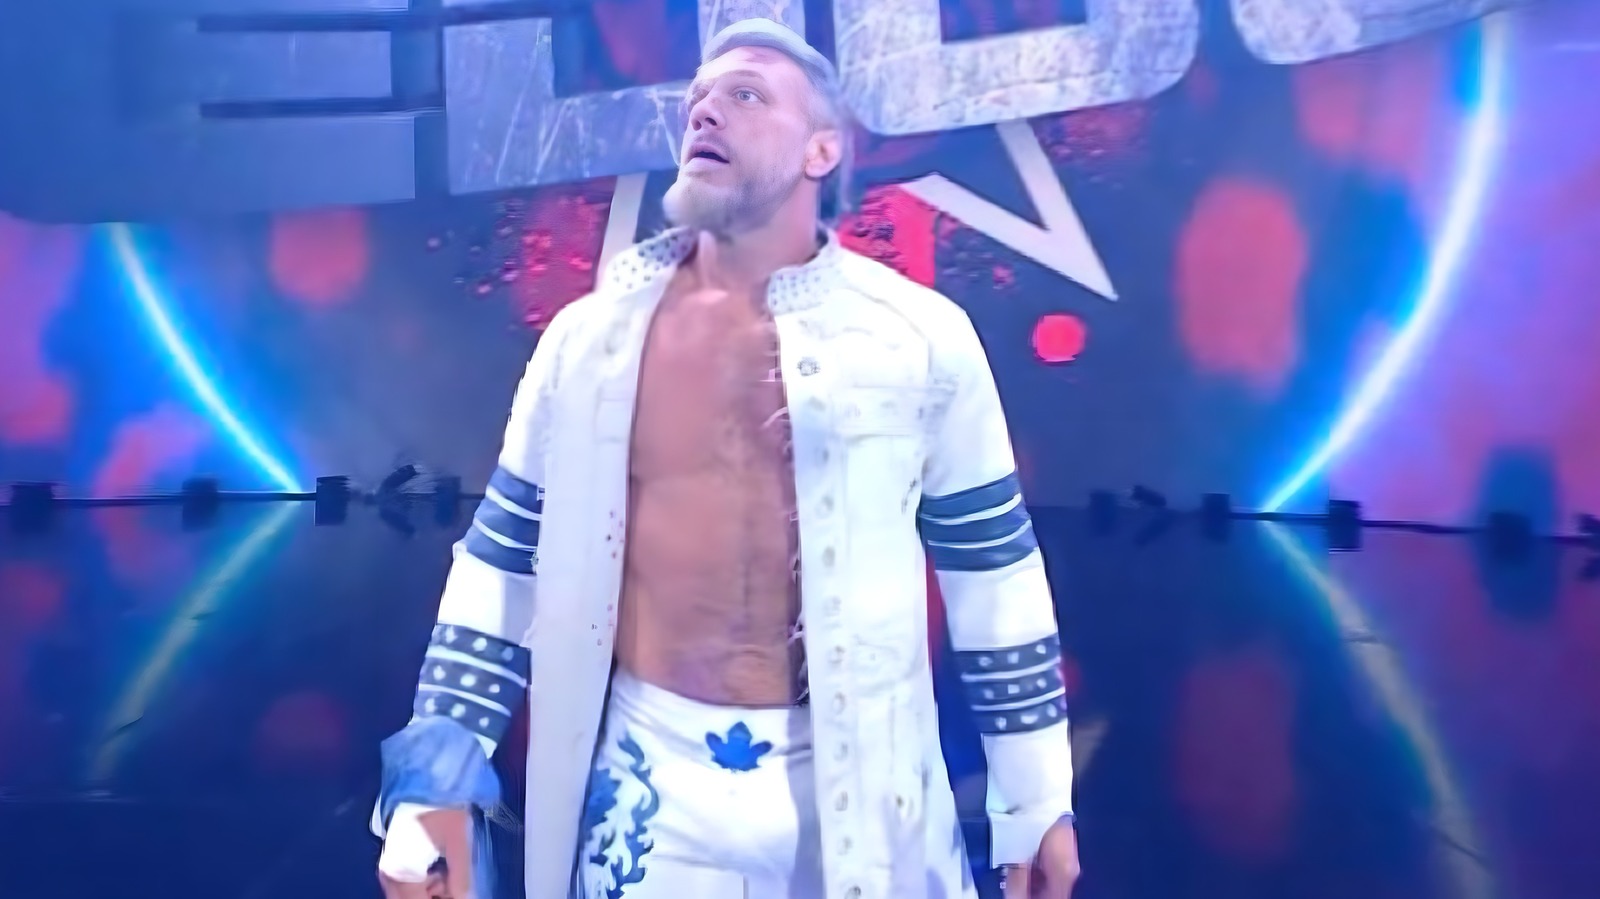 Edge derrota a Sheamus en SmackDown en Toronto, en lo que podría ser su último combate en la WWE